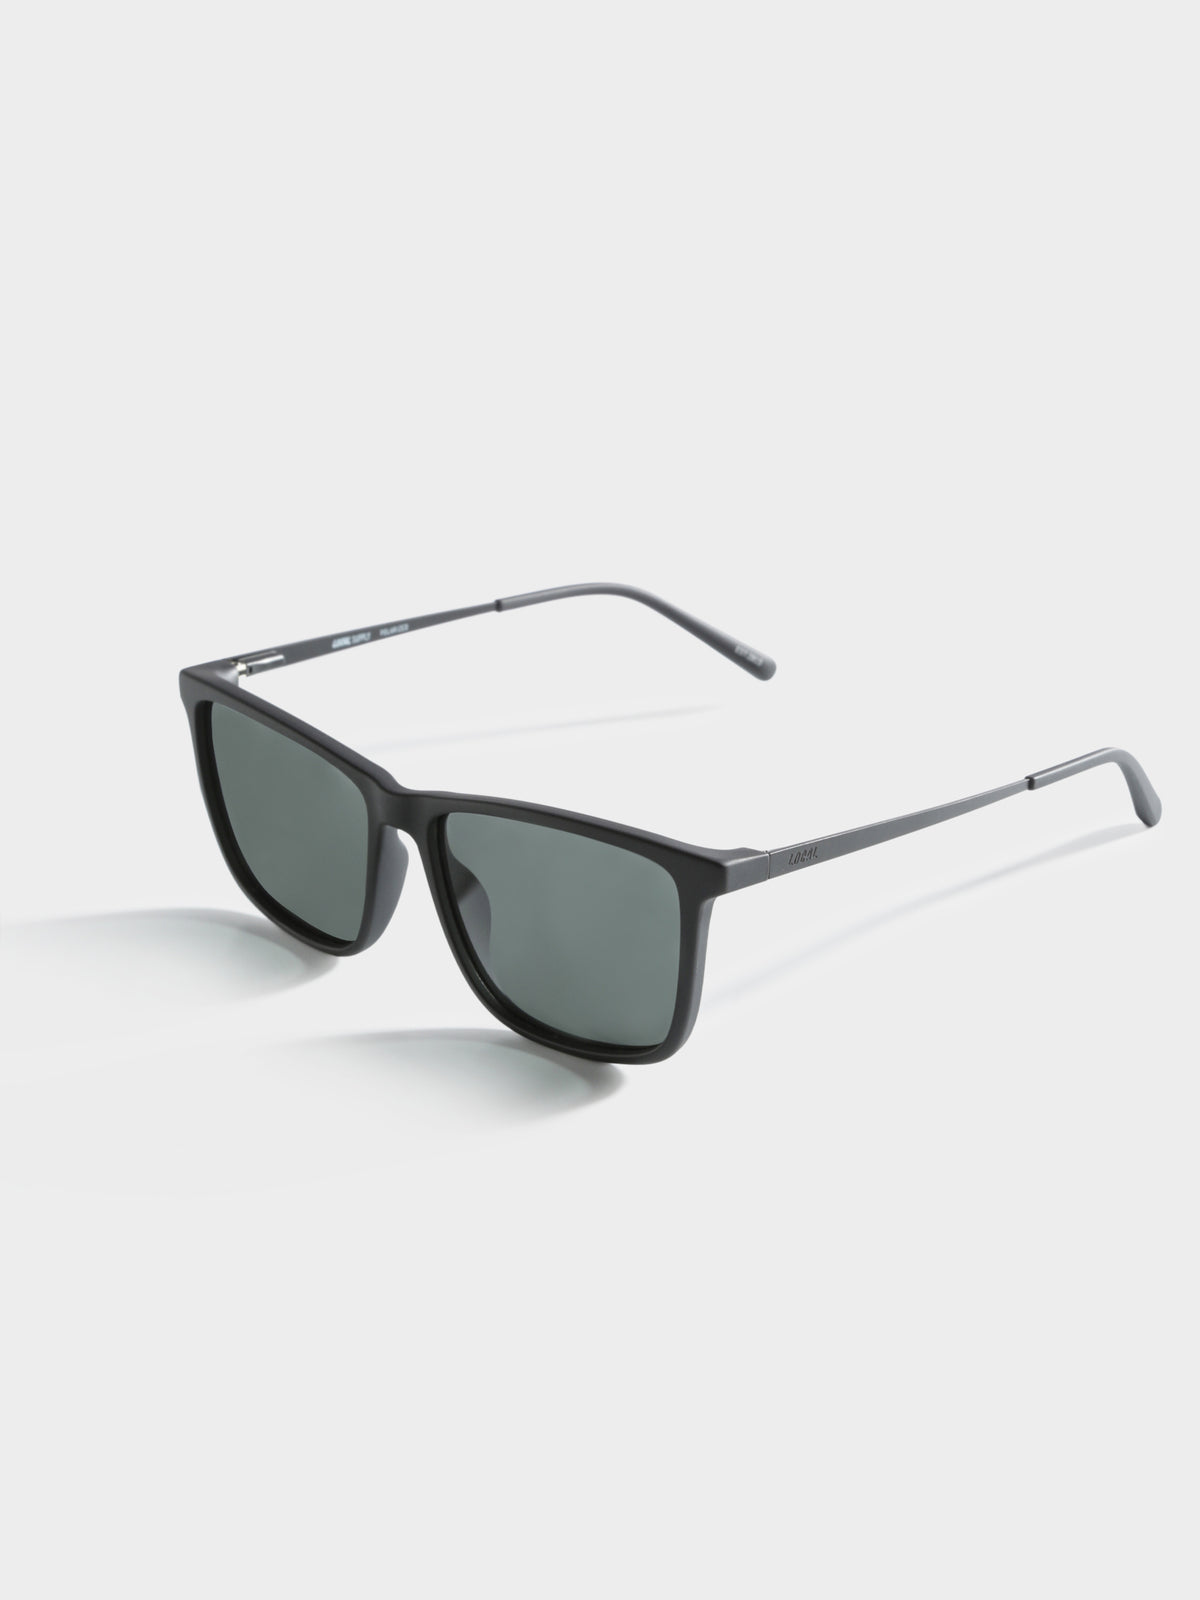 District Square BKM25 Polarised Sunglasses in Matte Black